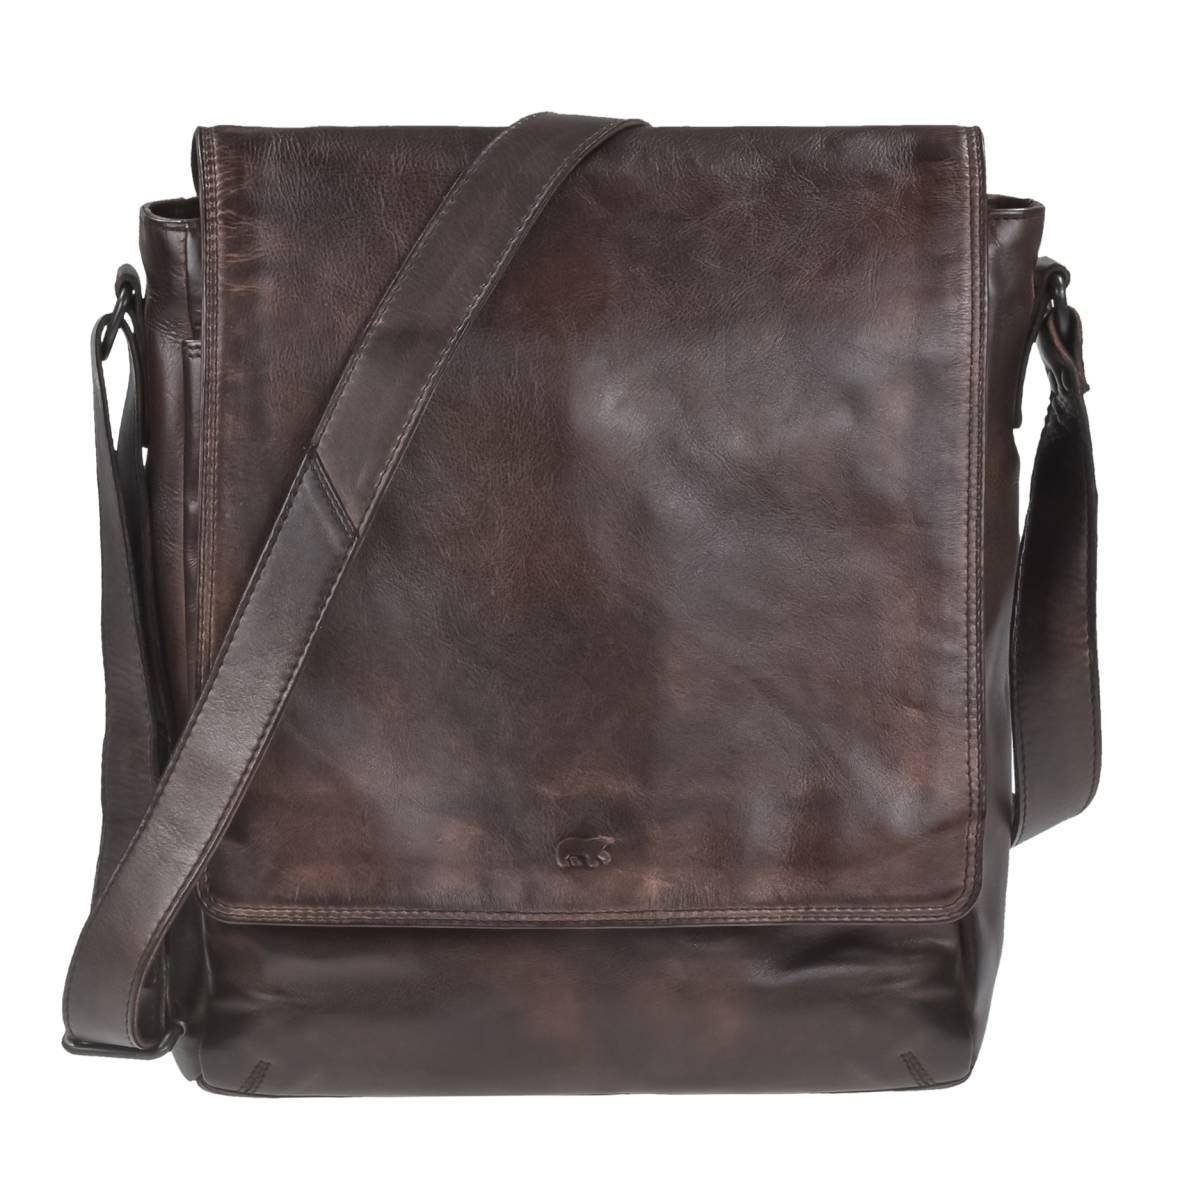 Bear Design Umhängetasche Dustin, Messenger 32x34cm, Schultertasche Leder weiches knautschiges Bag, brown